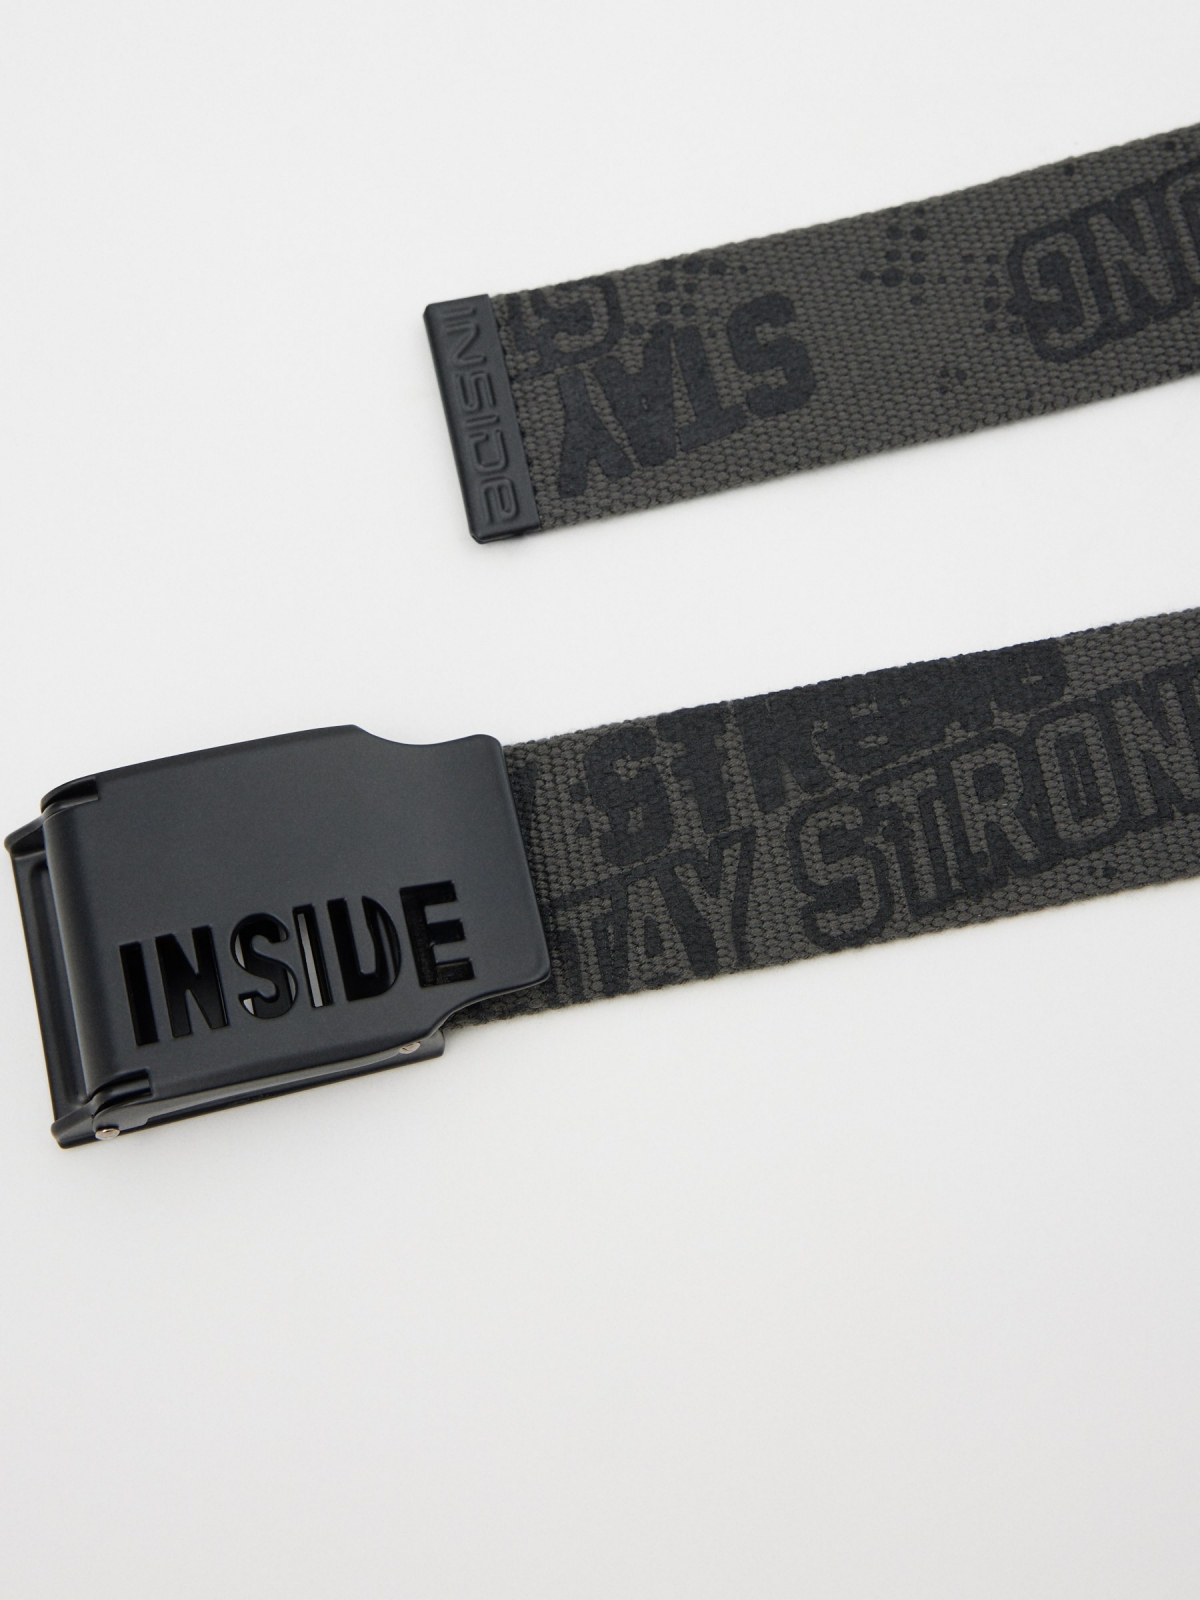 INSIDE print canvas belt dark grey detail view